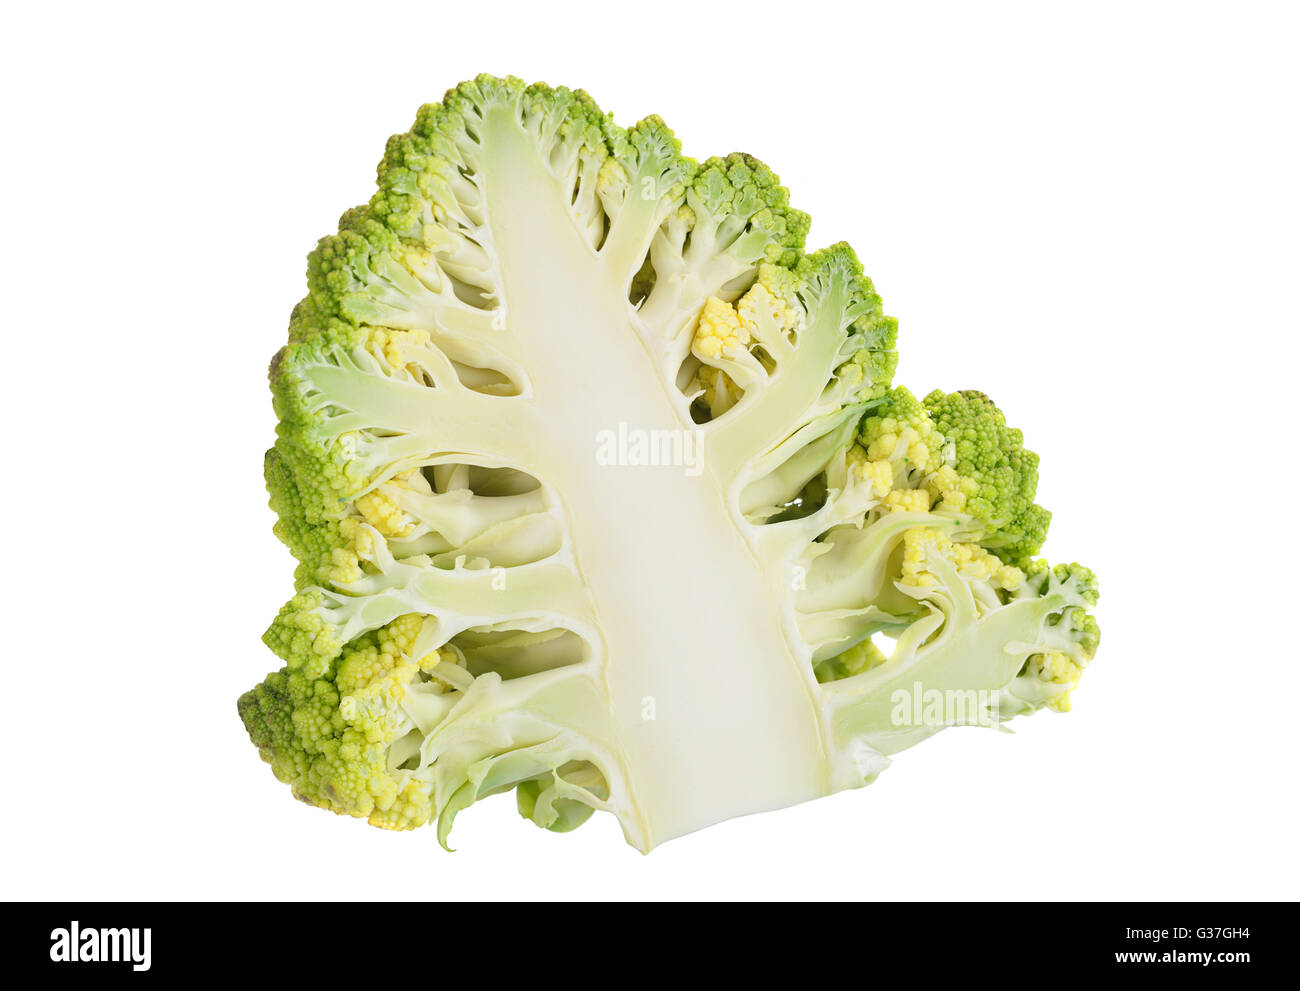 Cavolo broccolo Romanesco iolsted su sfondo bianco Foto Stock